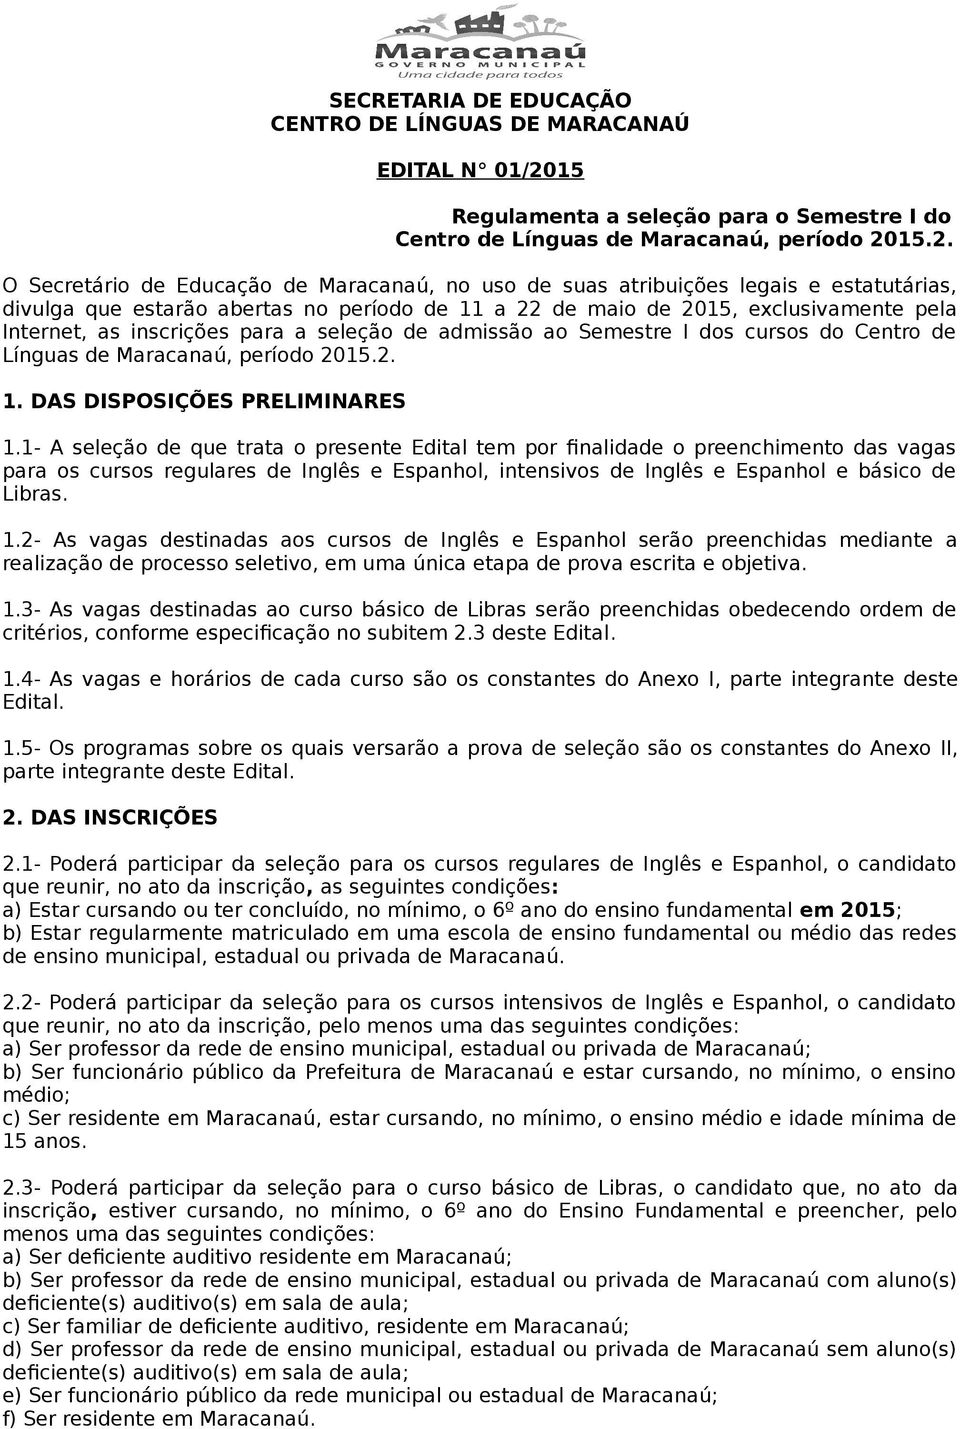 15.2. O Secretário de Educação de Maracanaú, no uso de suas atribuições legais e estatutárias, divulga que estarão abertas no período de 11 a 22 de maio de 2015, exclusivamente pela Internet, as